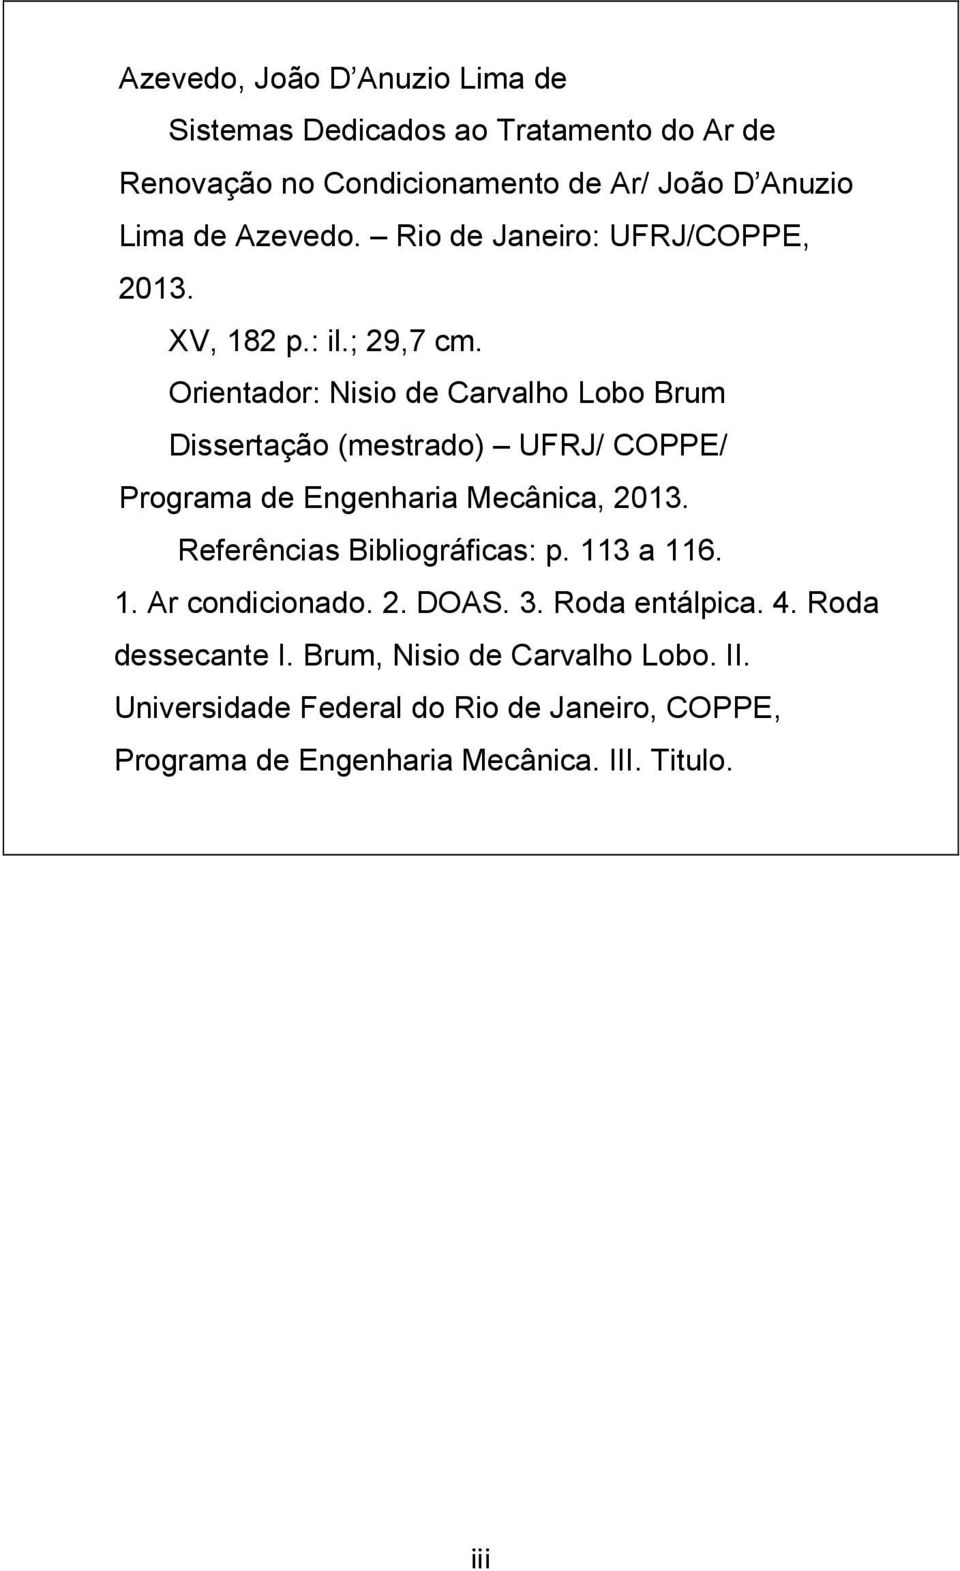 Orientador: Nisio de Carvalho Lobo Brum Dissertação (mestrado) UFRJ/ COPPE/ Programa de Engenharia Mecânica, 2013.